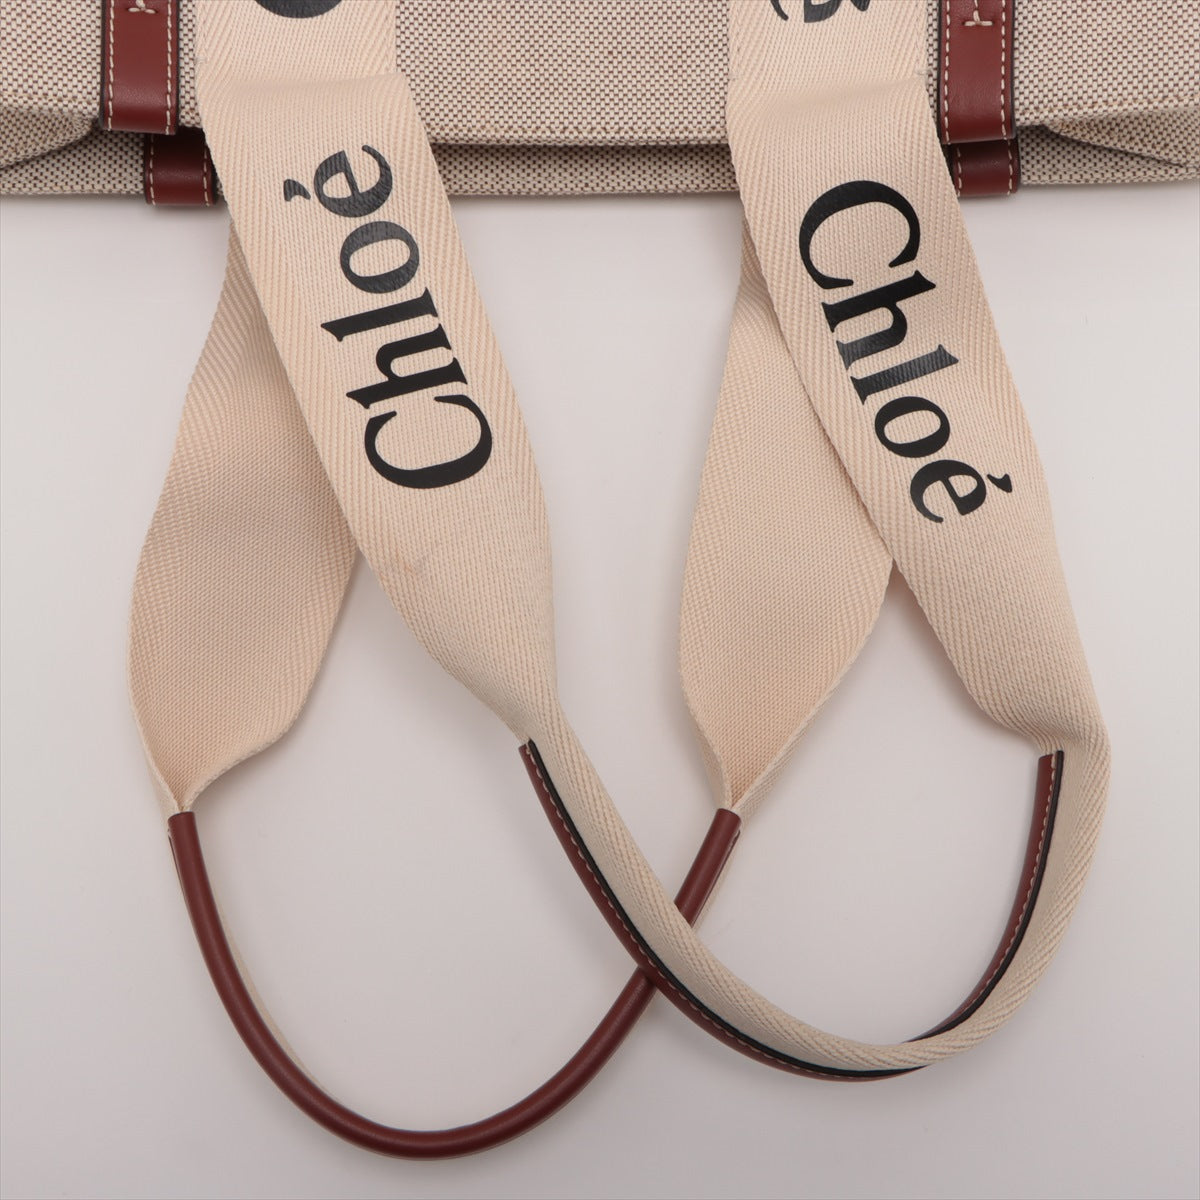 Chloe woody Medium Canvas & leather Tote bag Beige×Brown